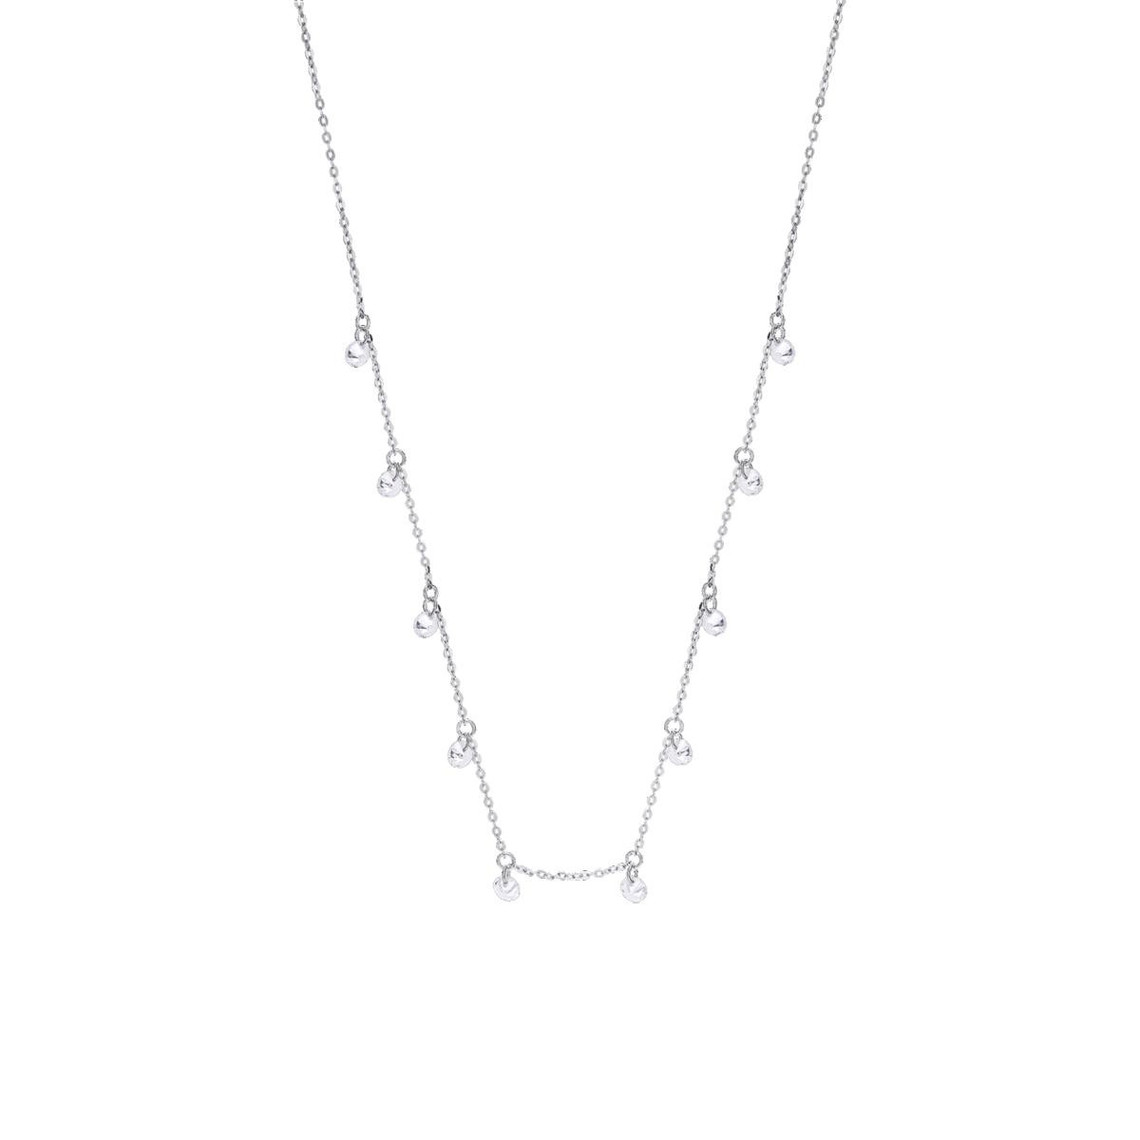 collier femme lotus silver - lp3002-1-1 argent